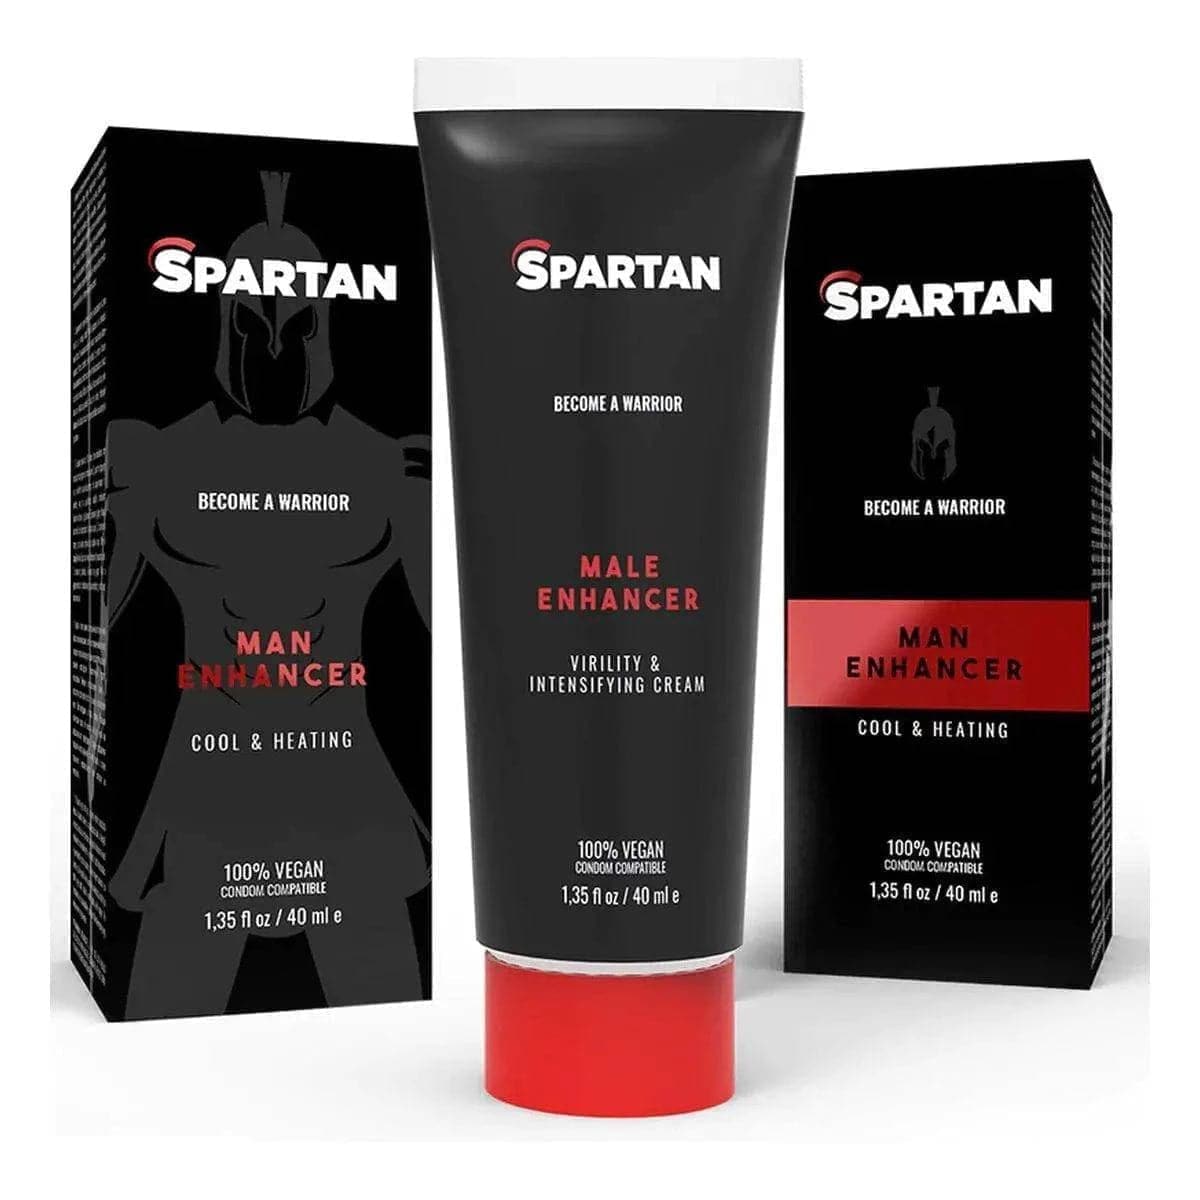 Gel Estimulante Spartan Couple Gel 40ml, Sensação de calor e frio, 100% Vegan (unisexo)  Spartan   